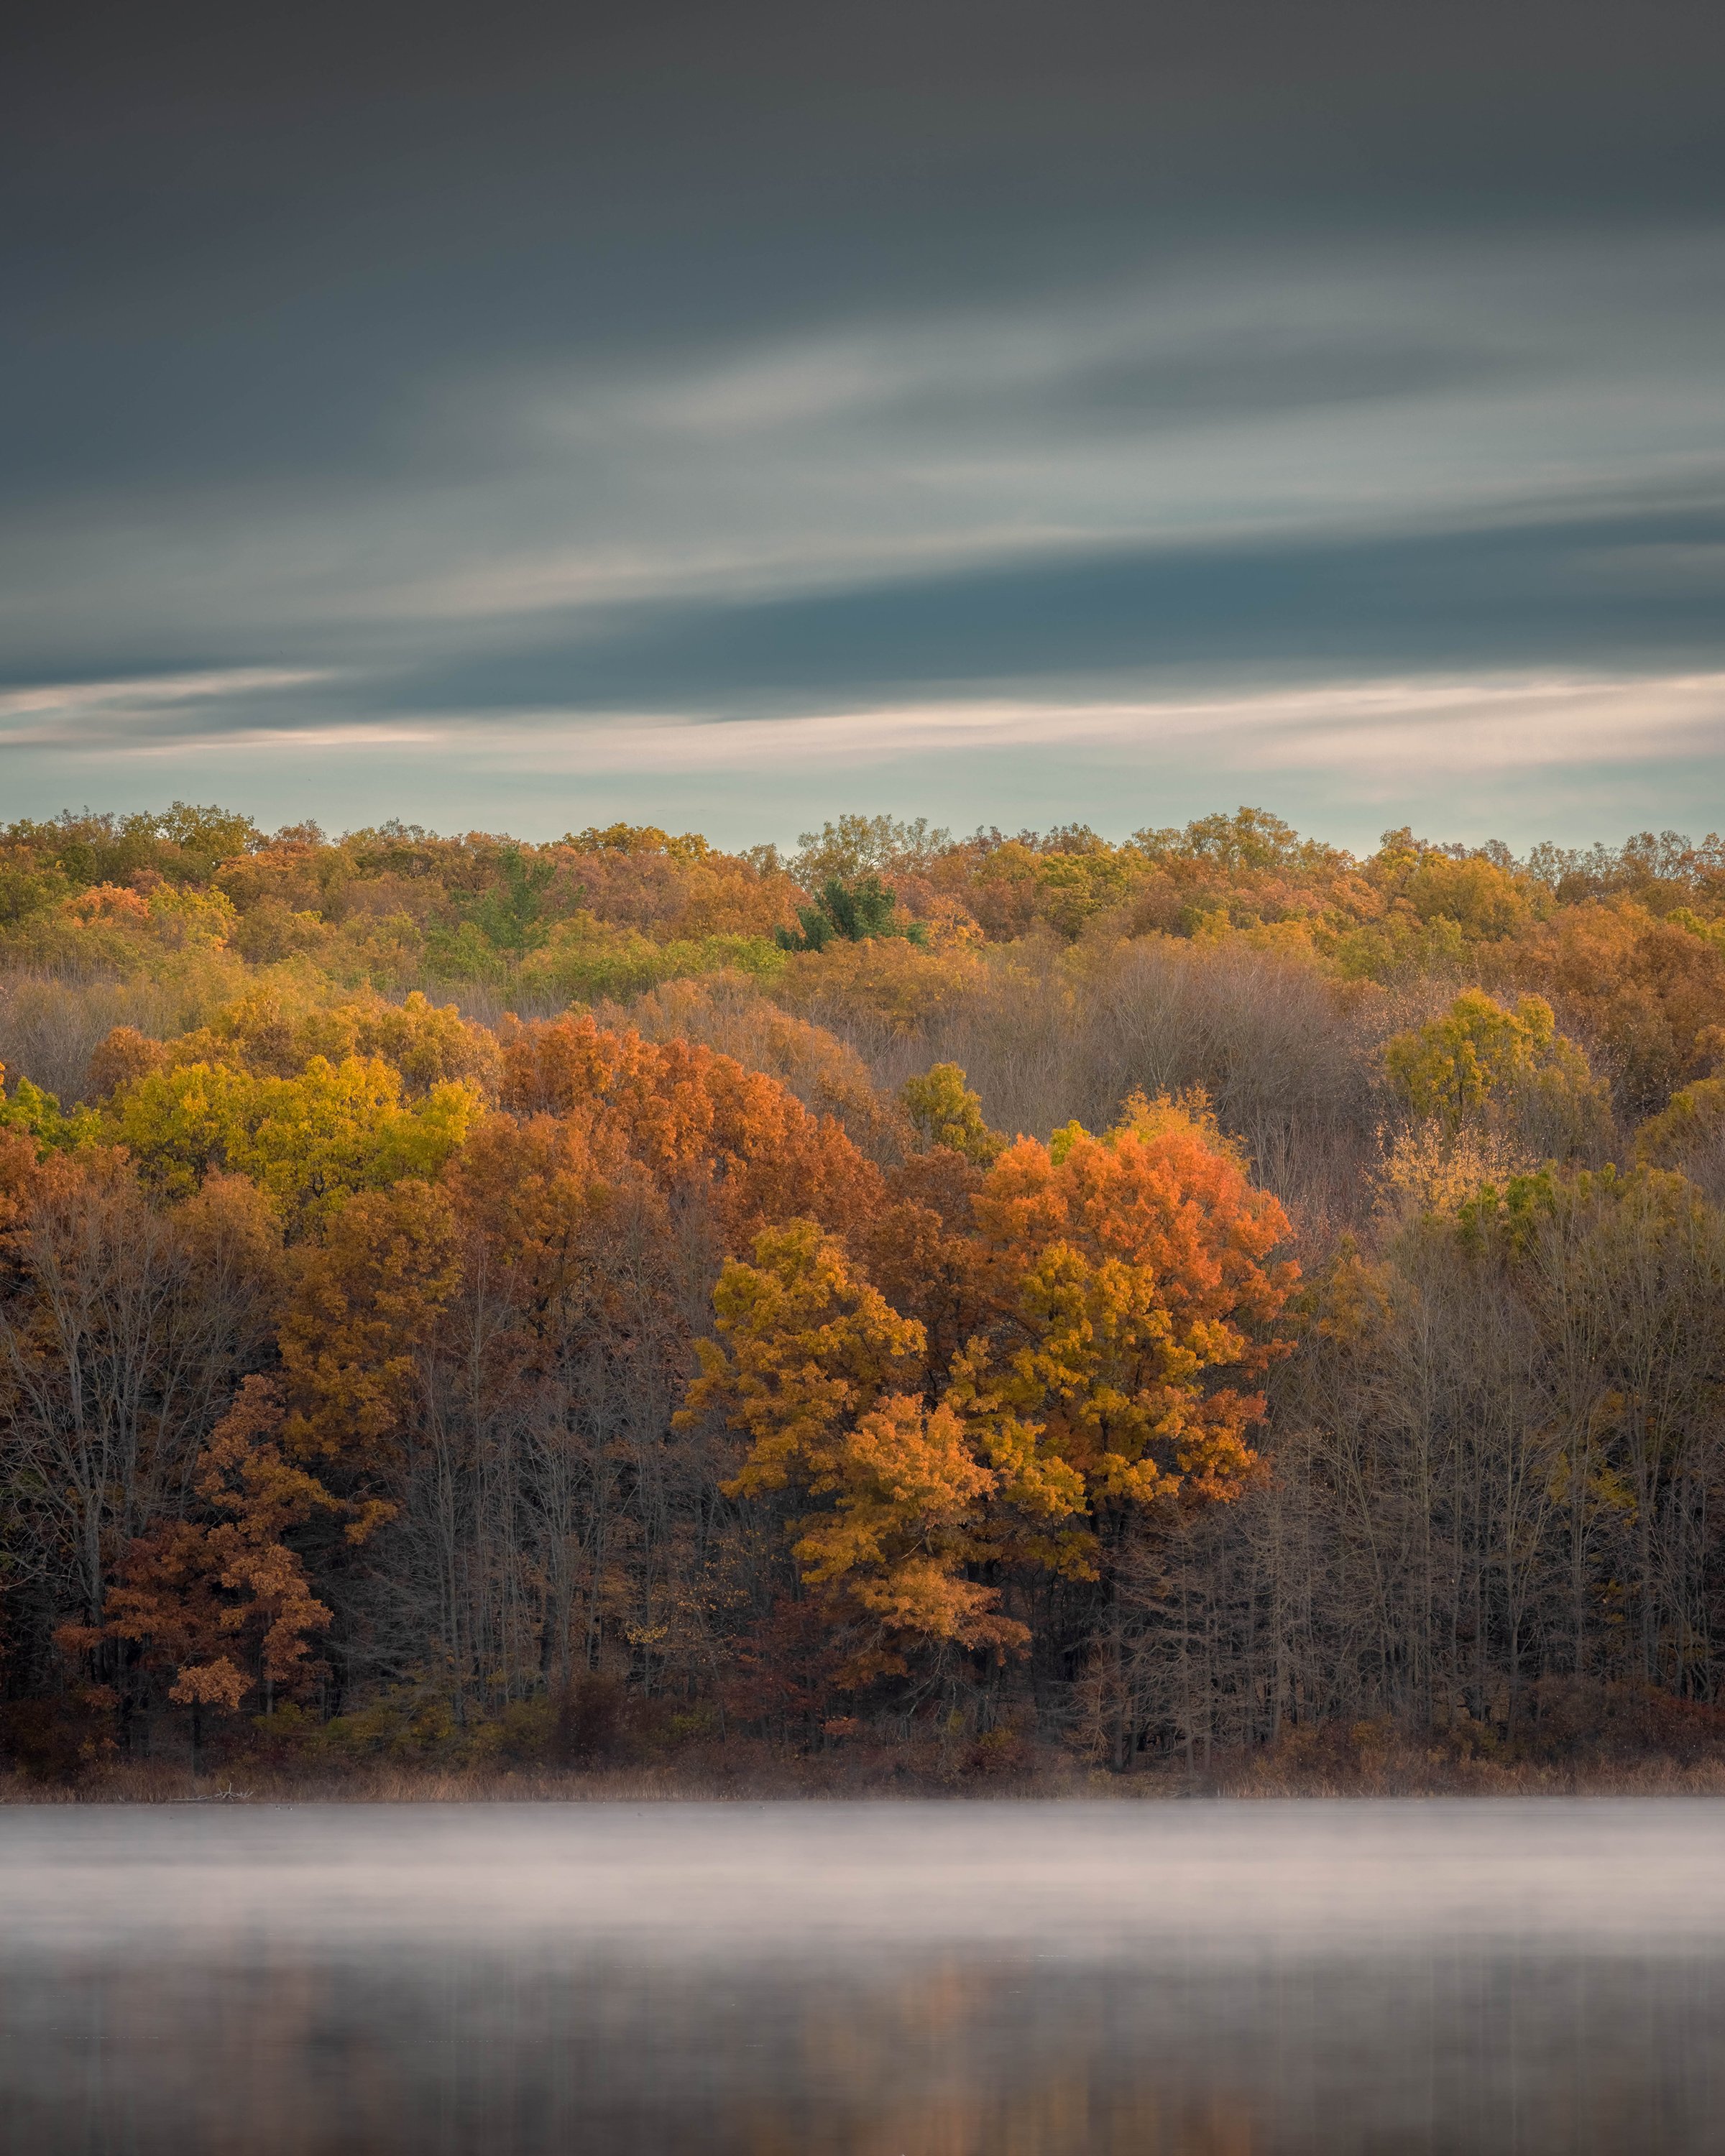  Misty morning in fall, Pickerel Lake, MI 